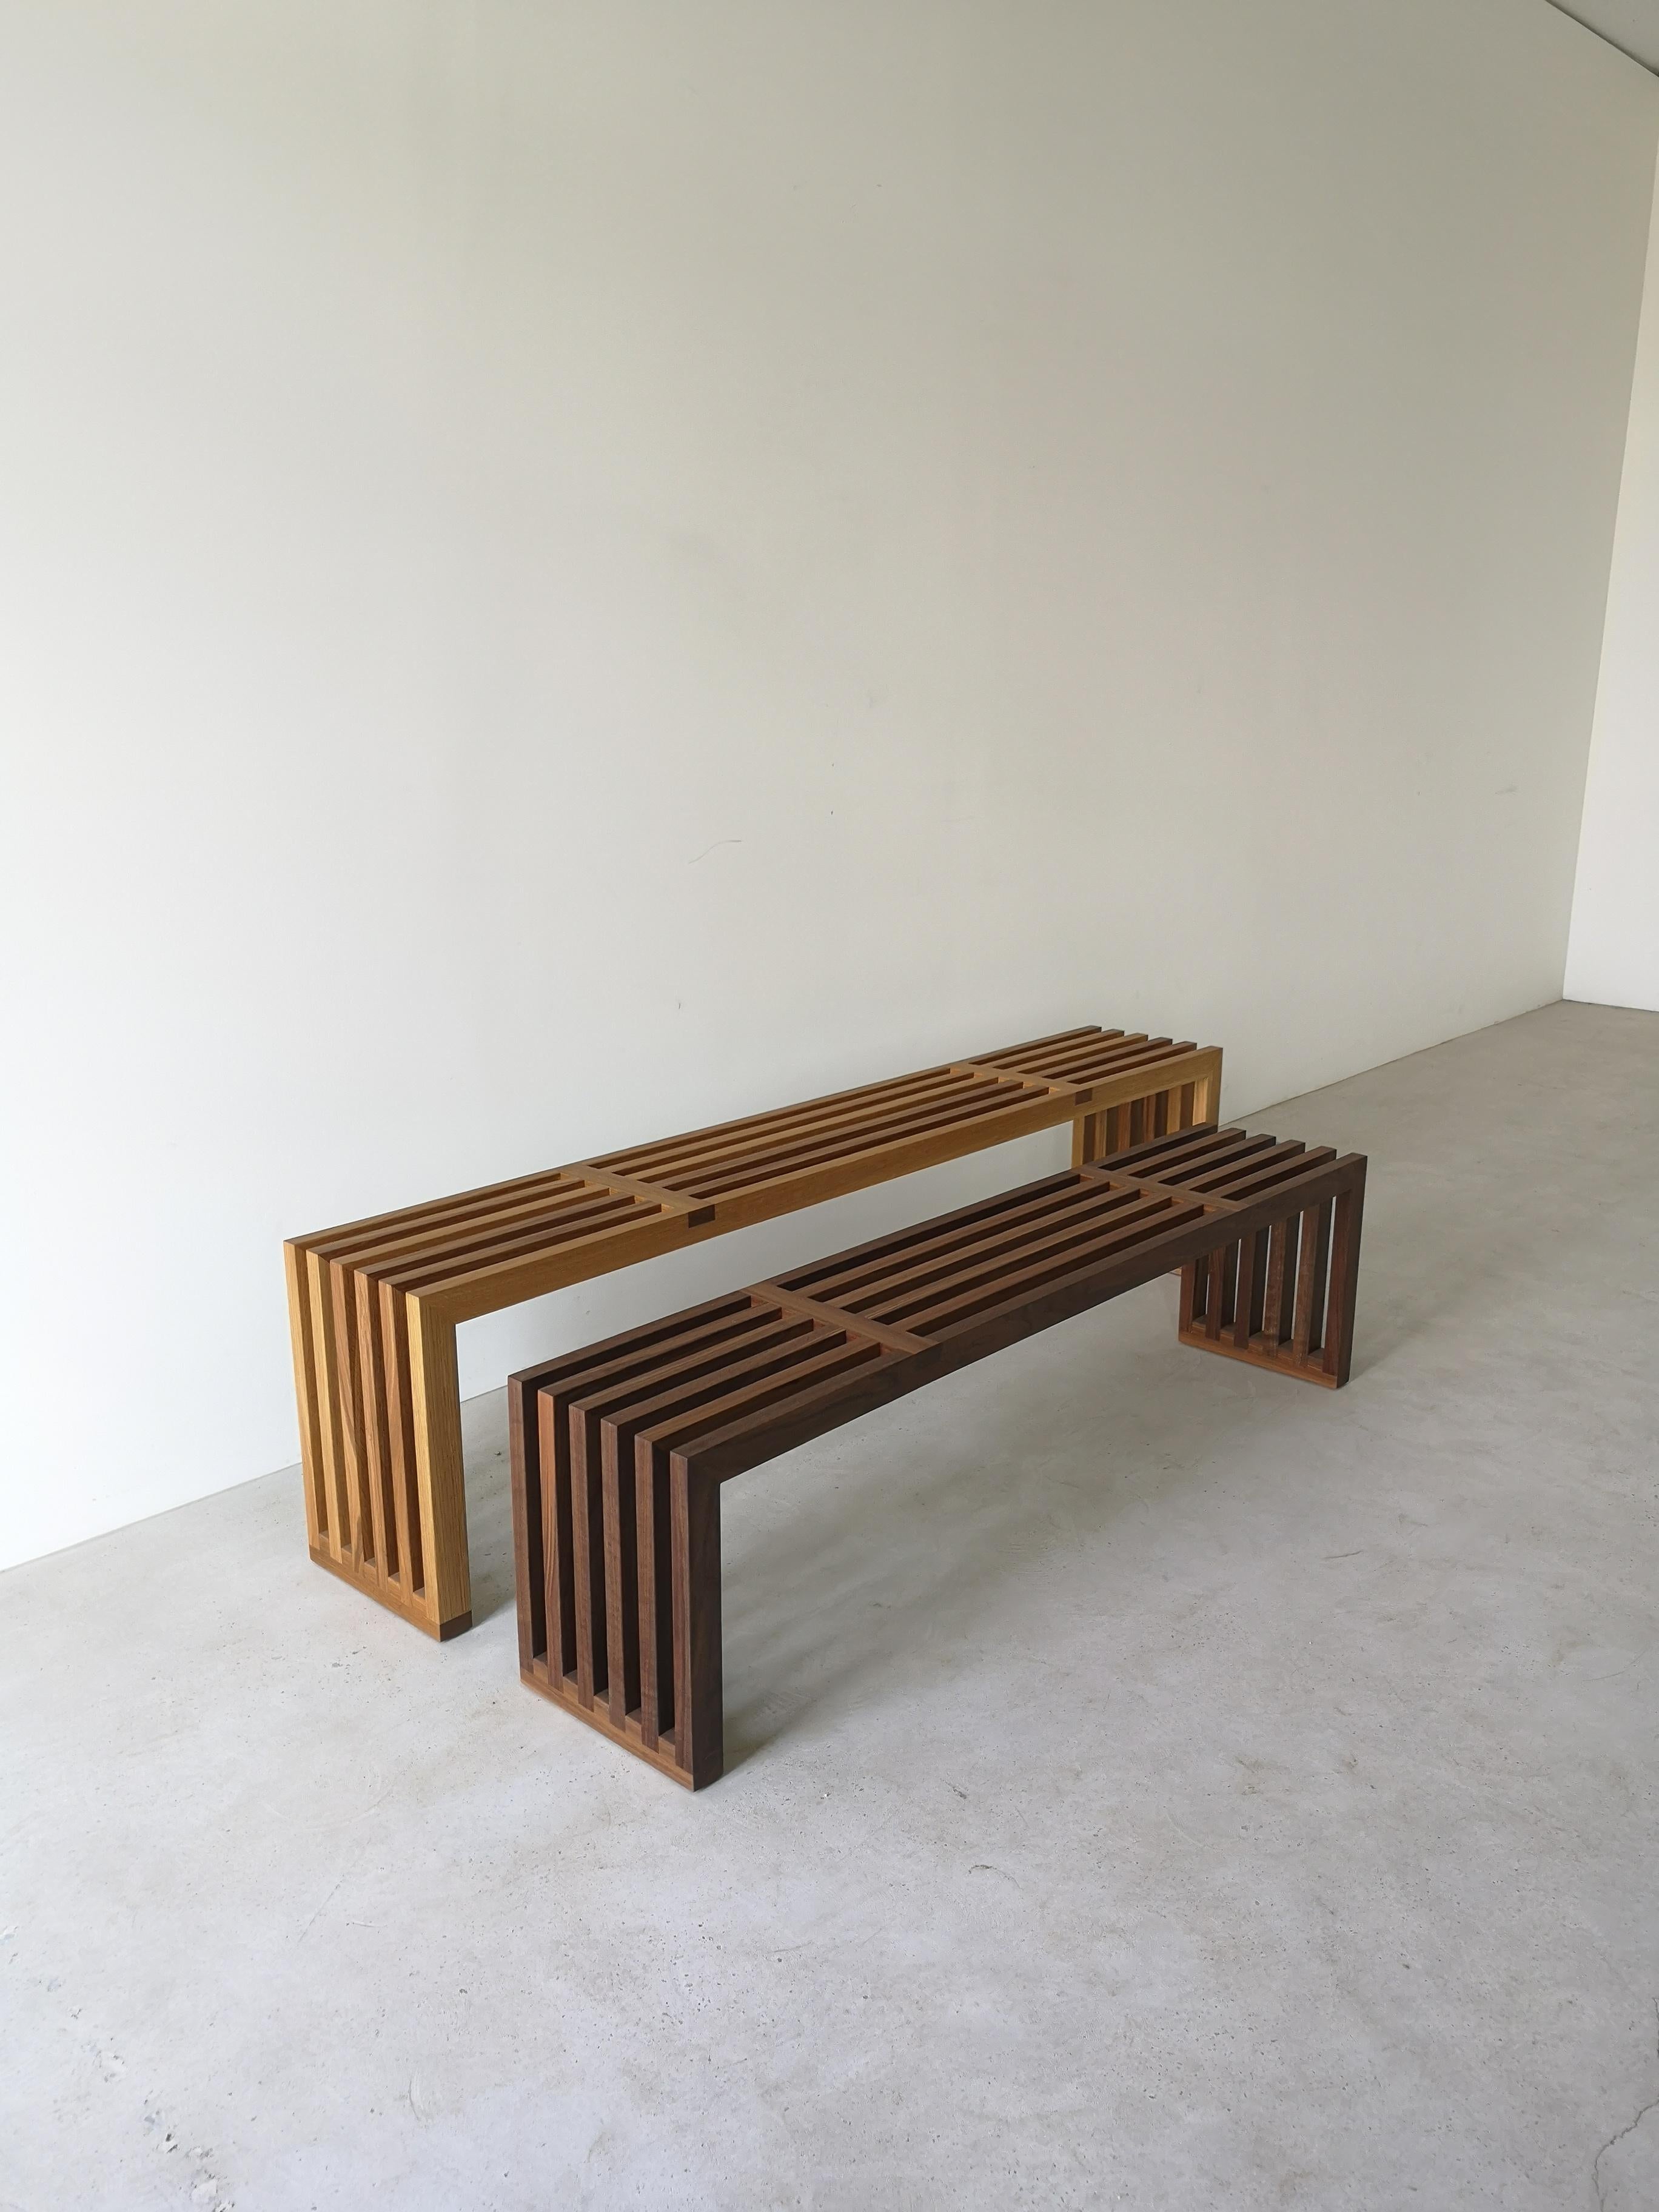 2x4 bench